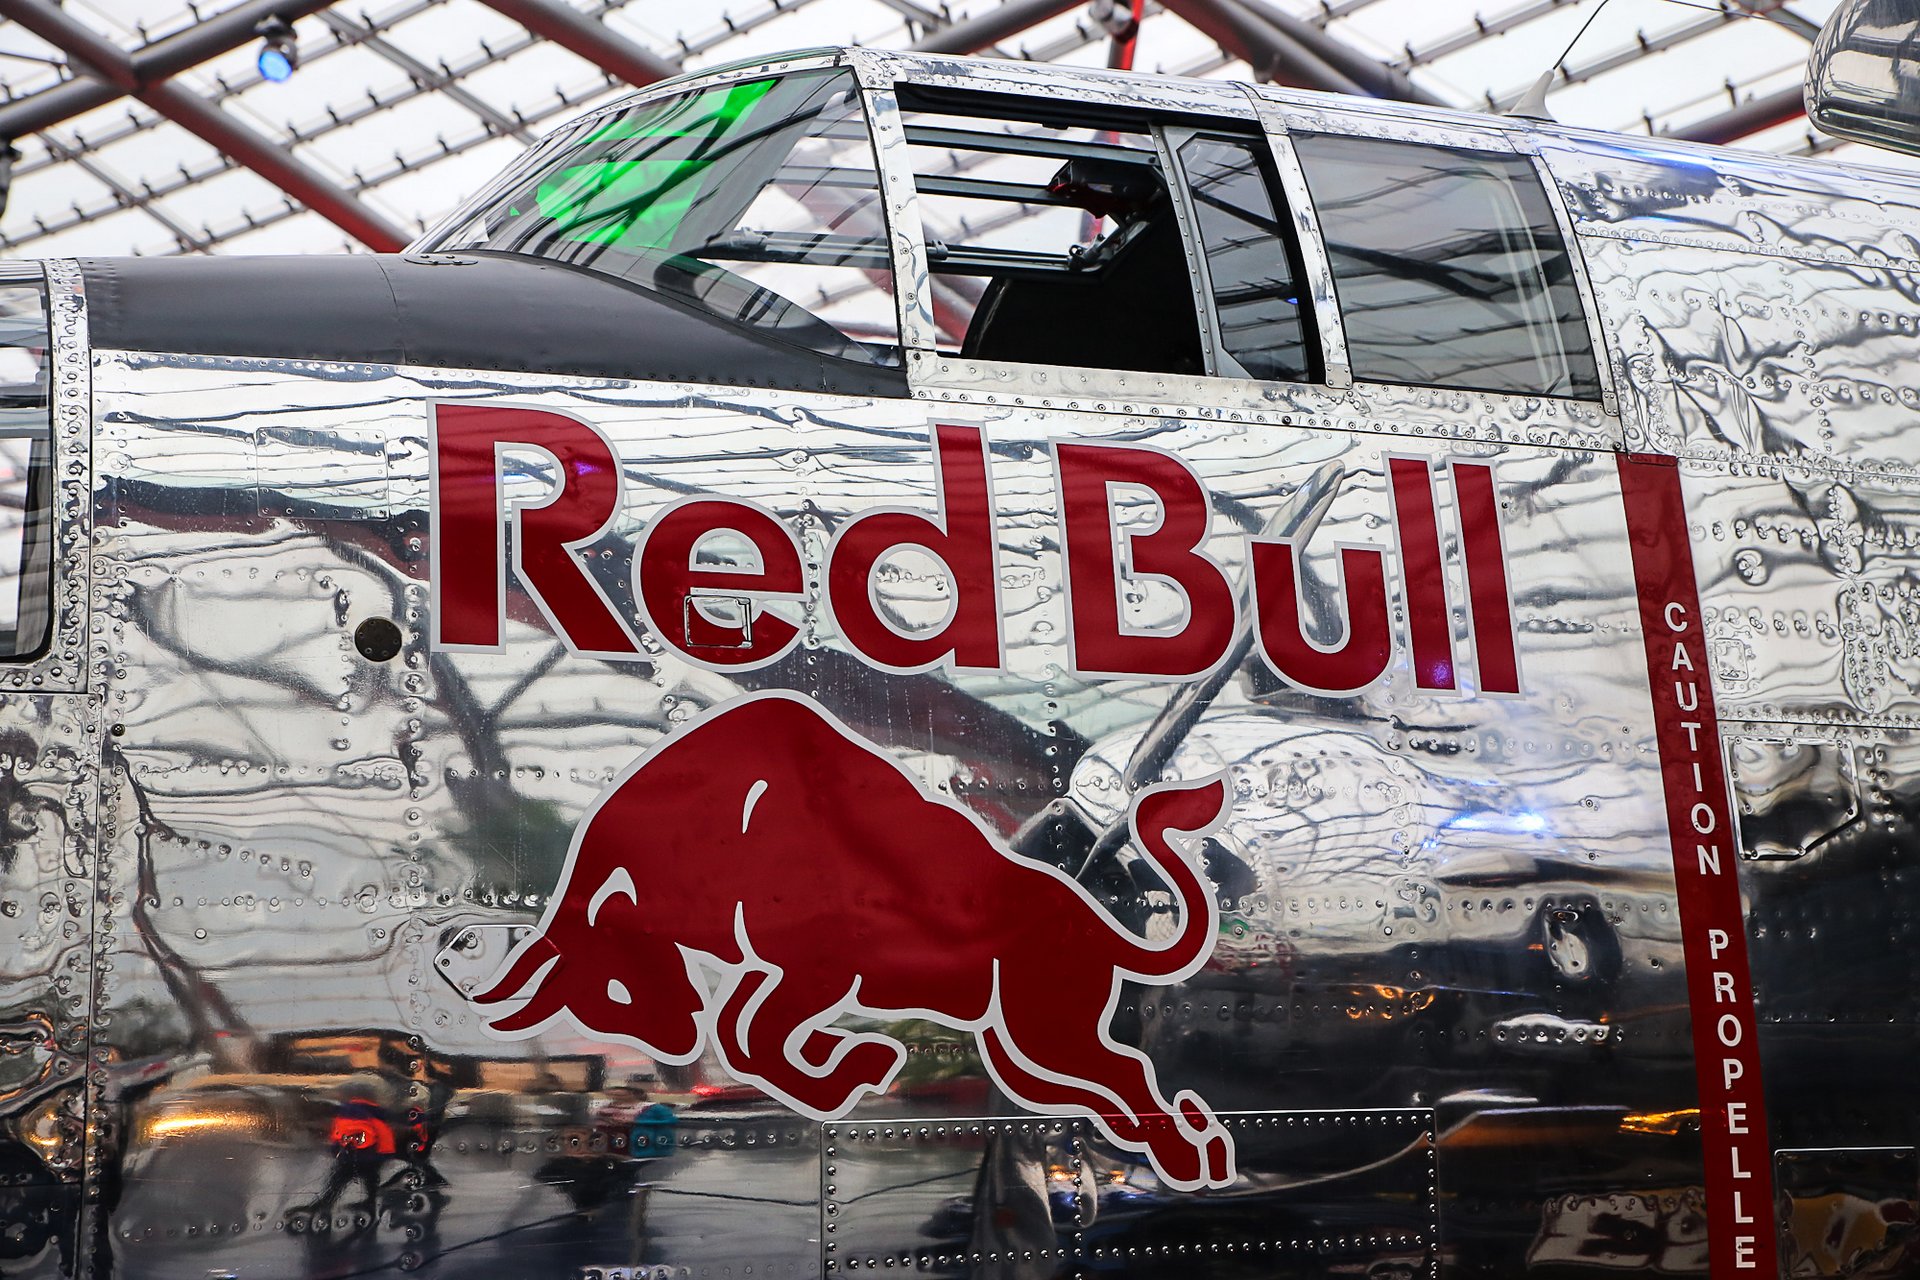 Логотип "Red Bull" на фюзеляже самолета Б-25 "Митчелл"